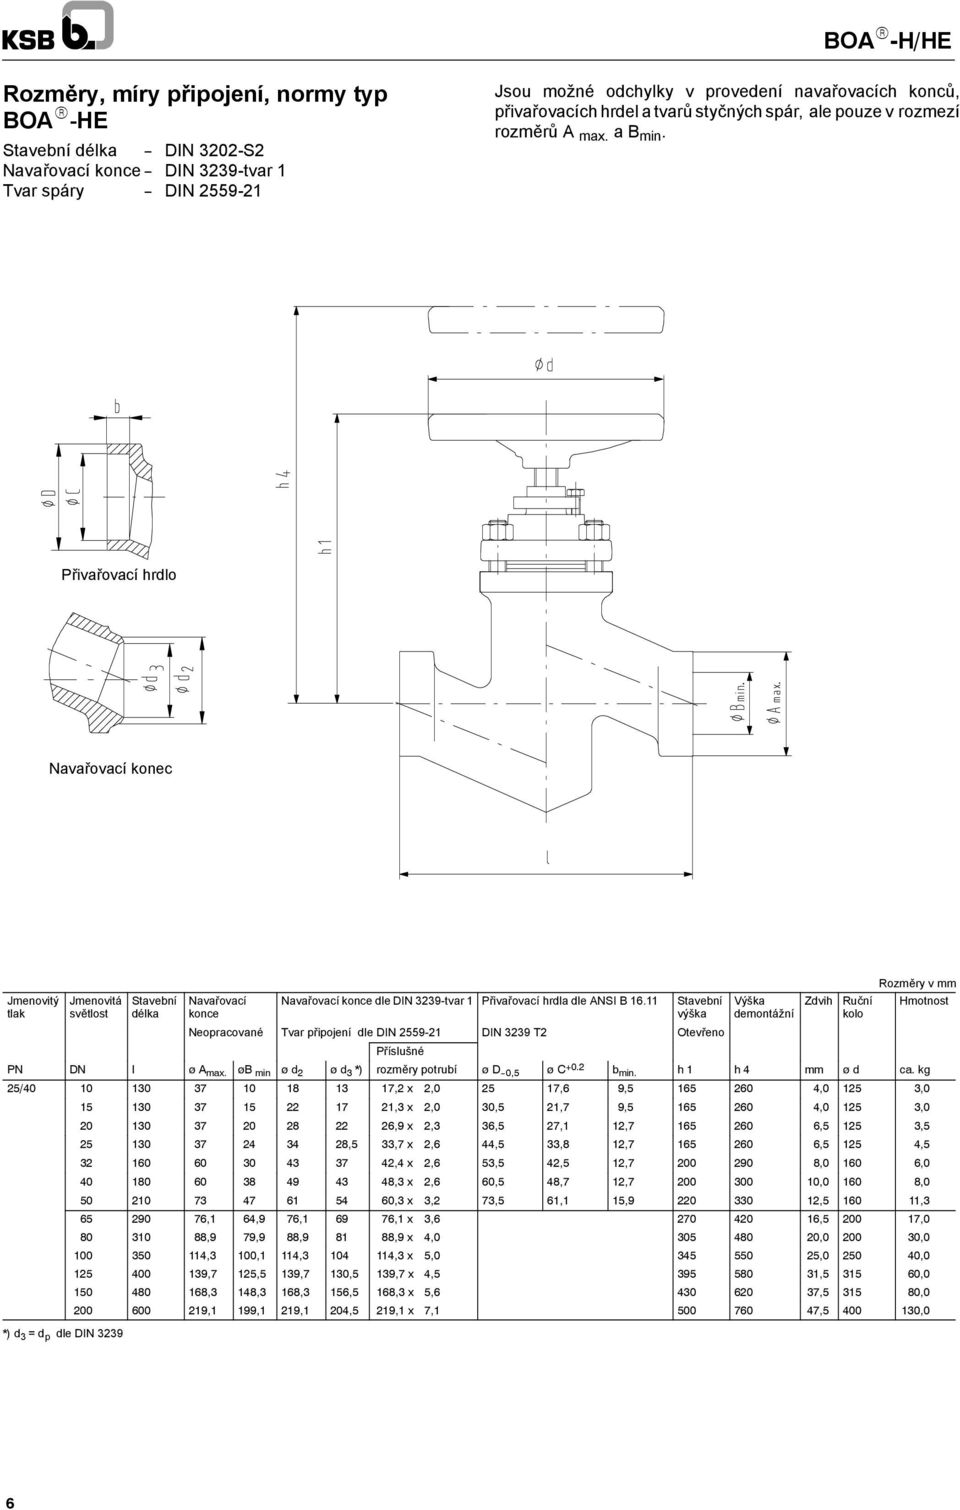 Přivařovací hrdlo Navařovací konec Jmenovitý tlak délka Navařovací konce Navařovací konce dle DIN 3239-tvar 1 Přivařovací hrdla dle ANSI B 16.